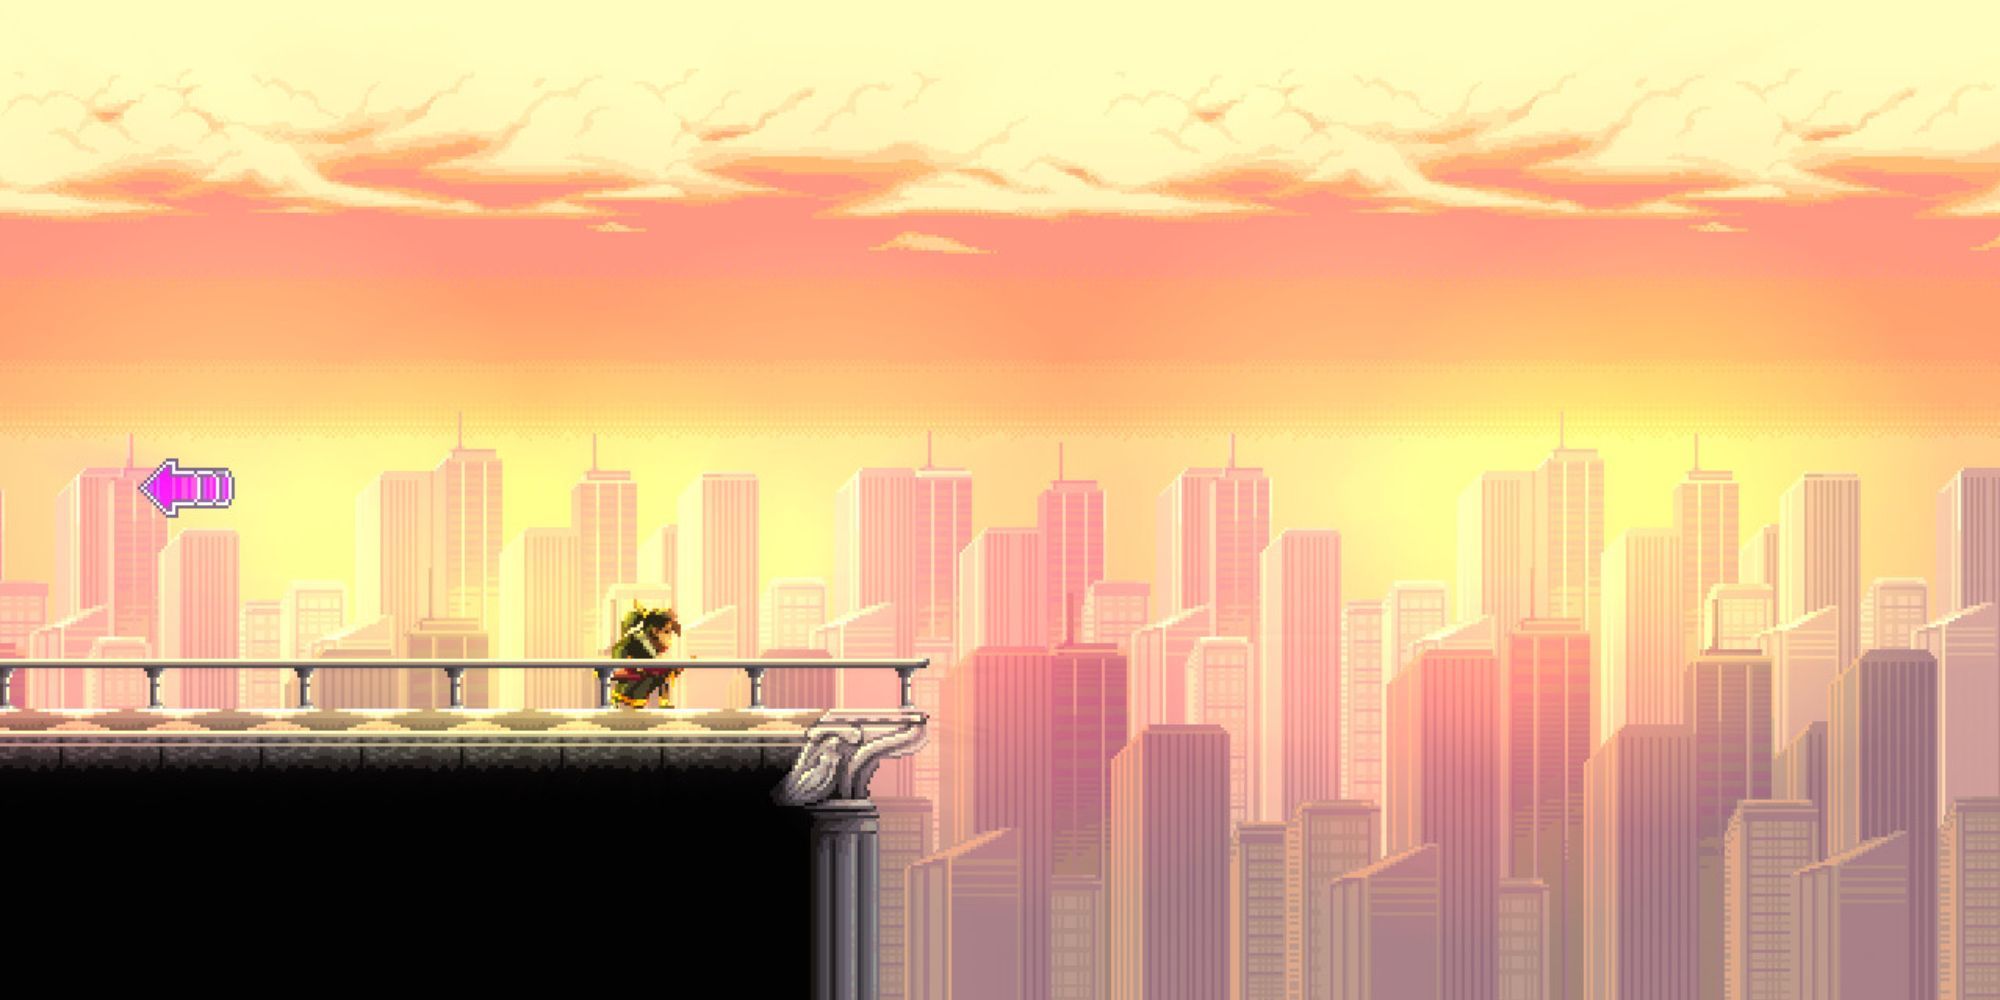 Katana Zero character standing on rooftop